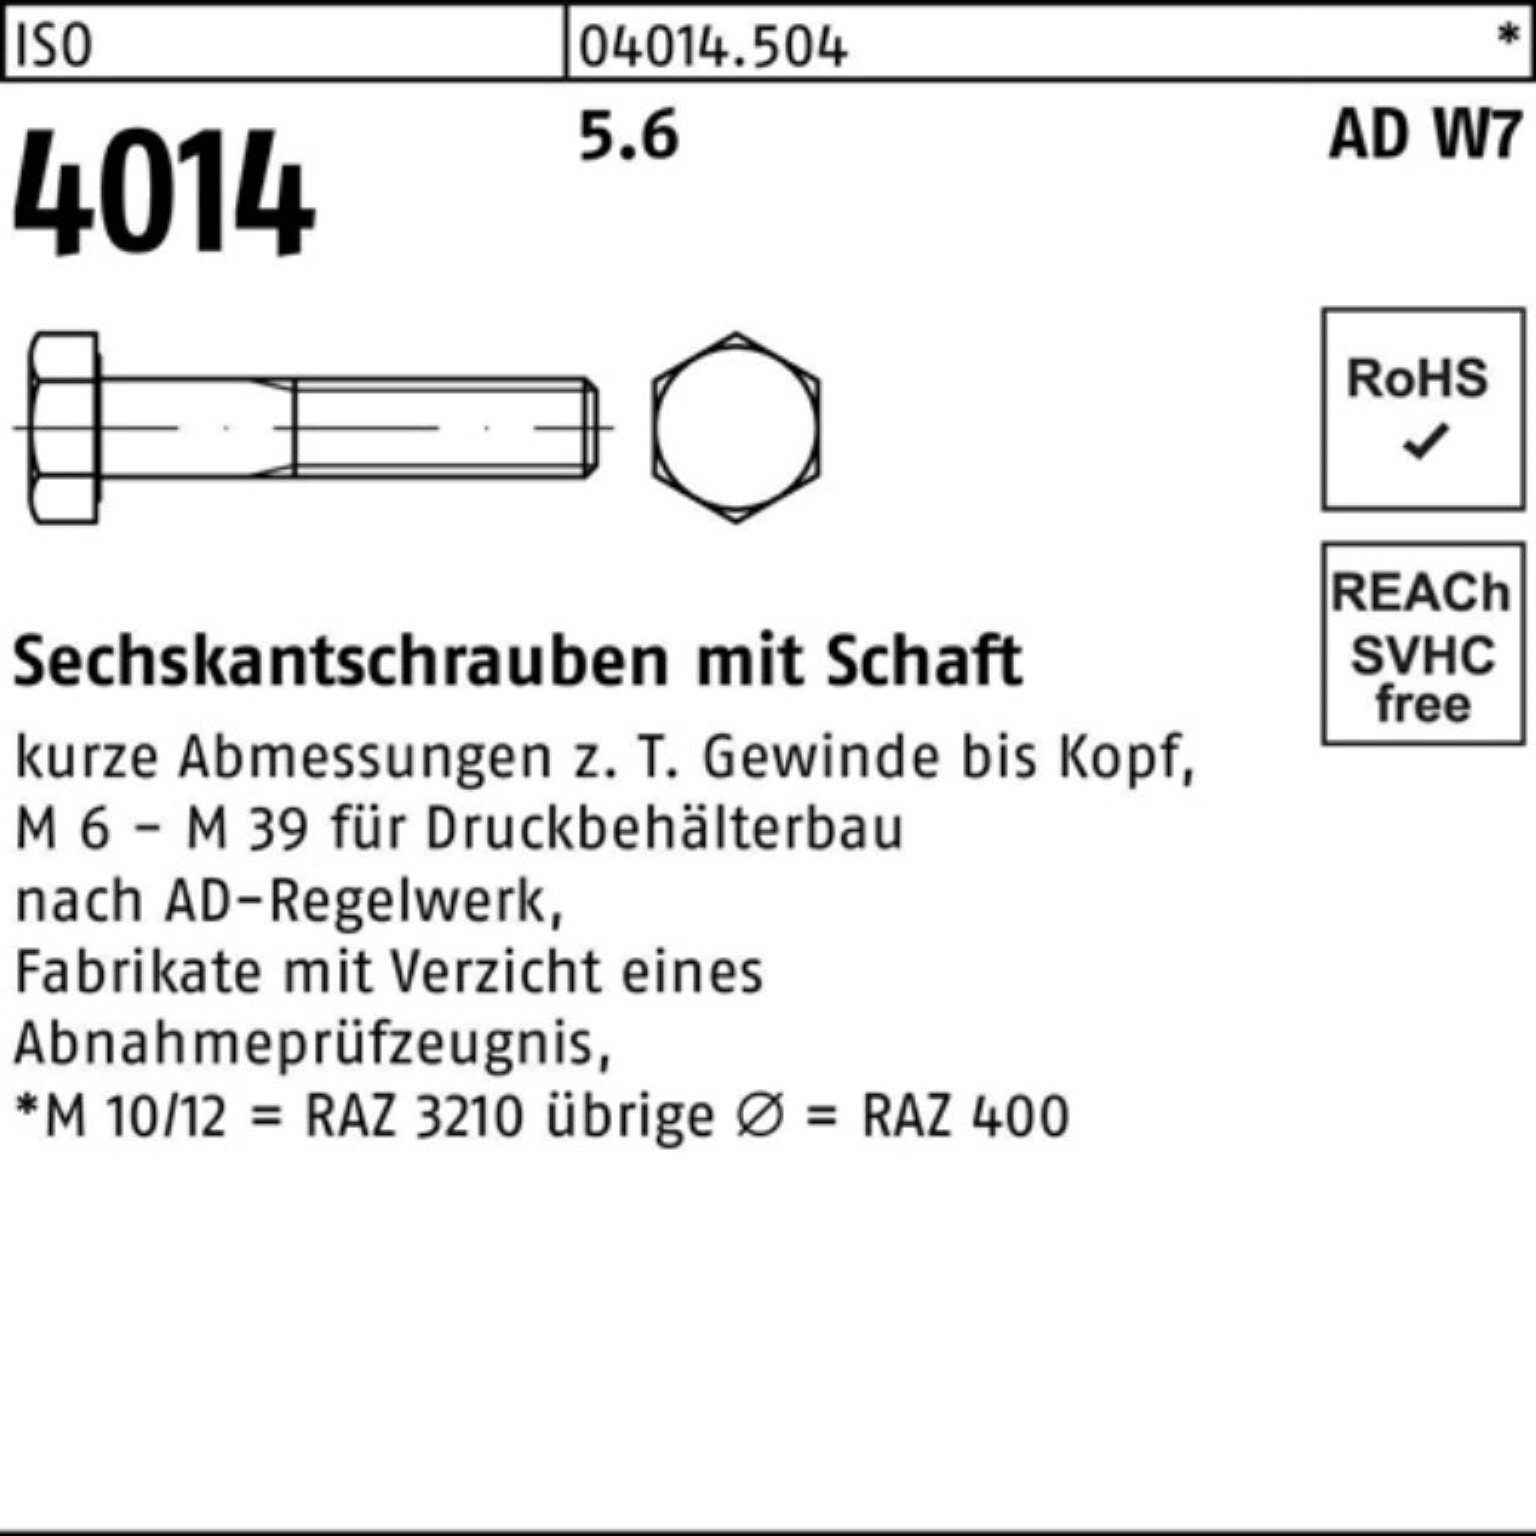 M12x W7 Stück Sechskantschraube 140 100er 5.6 Sechskantschraube Schaft Bufab Pack 4014 ISO 50